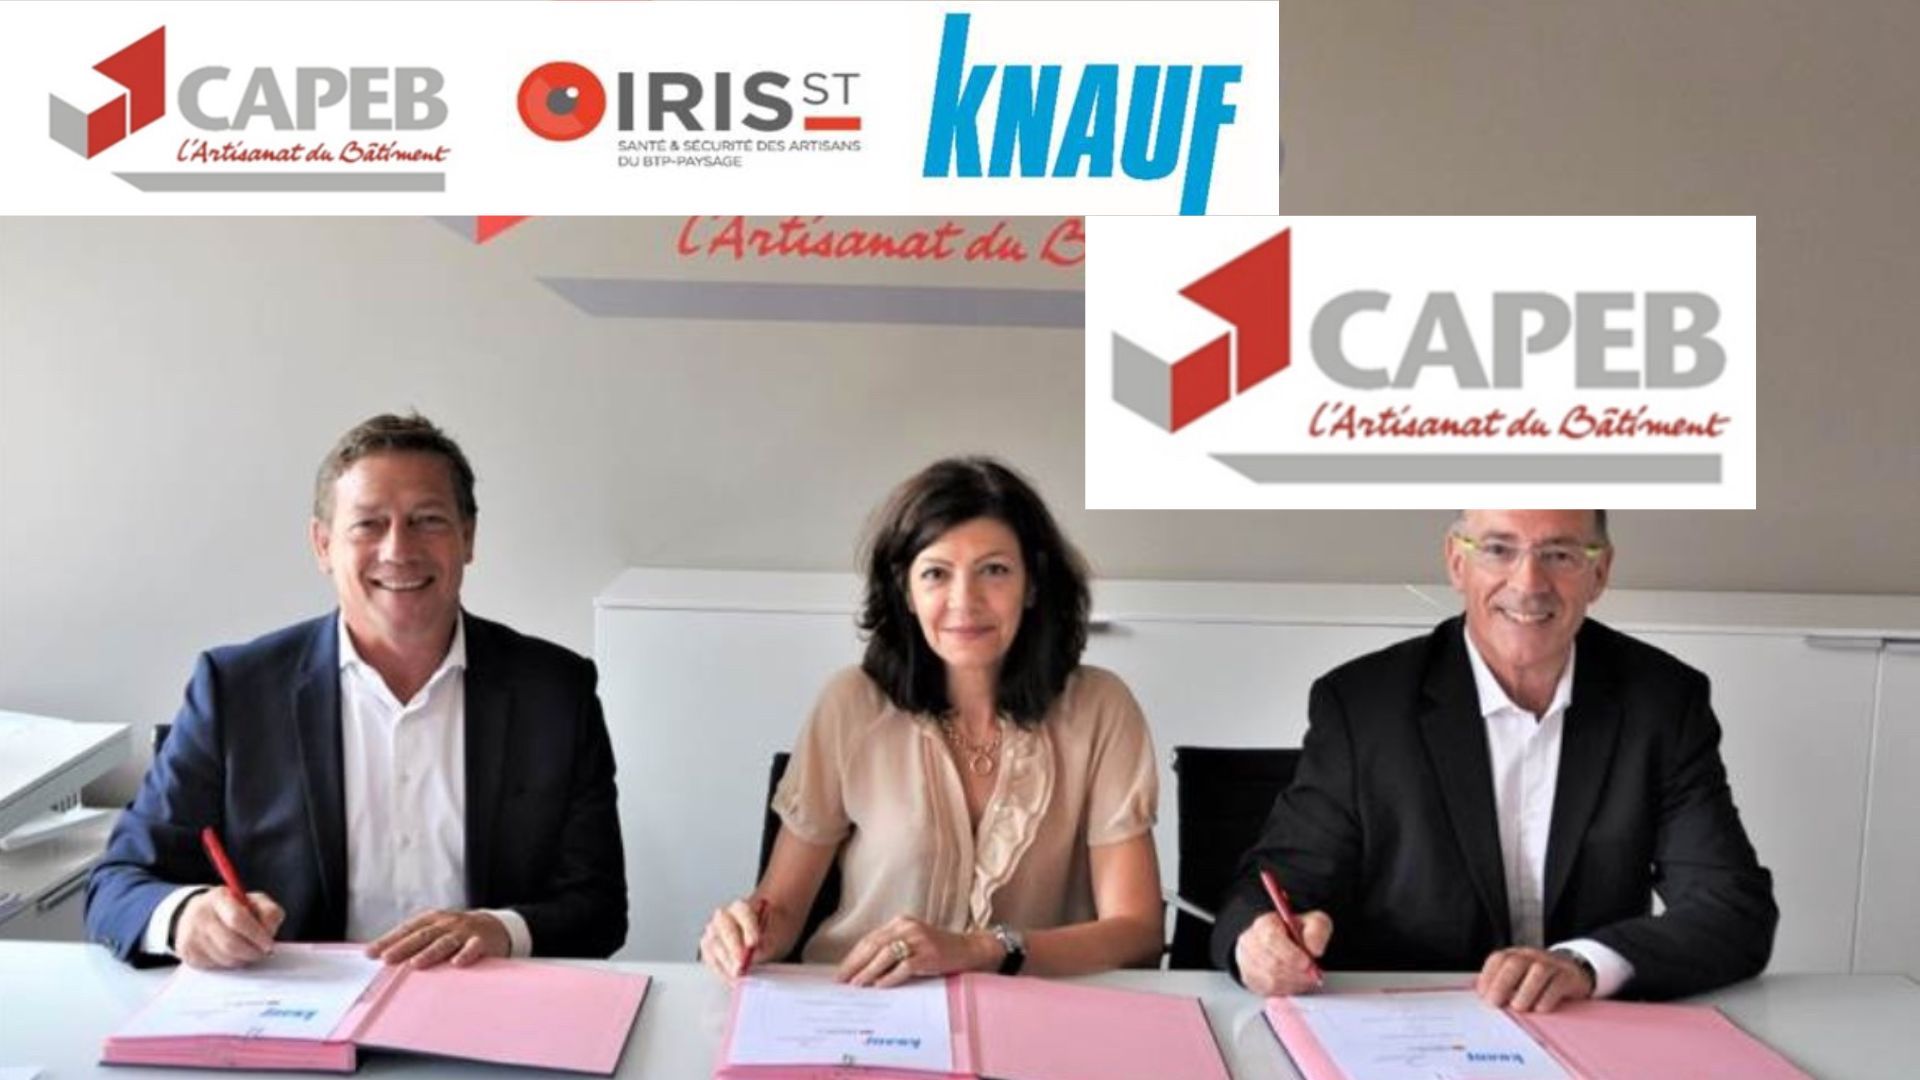 La CAPEB, IRIS-ST et KNAUF renouvellent leur partenariat afin d’accélérer la rénovation énergétique et sensibiliser les professionnels du bâtiment aux risques sur les chantiers